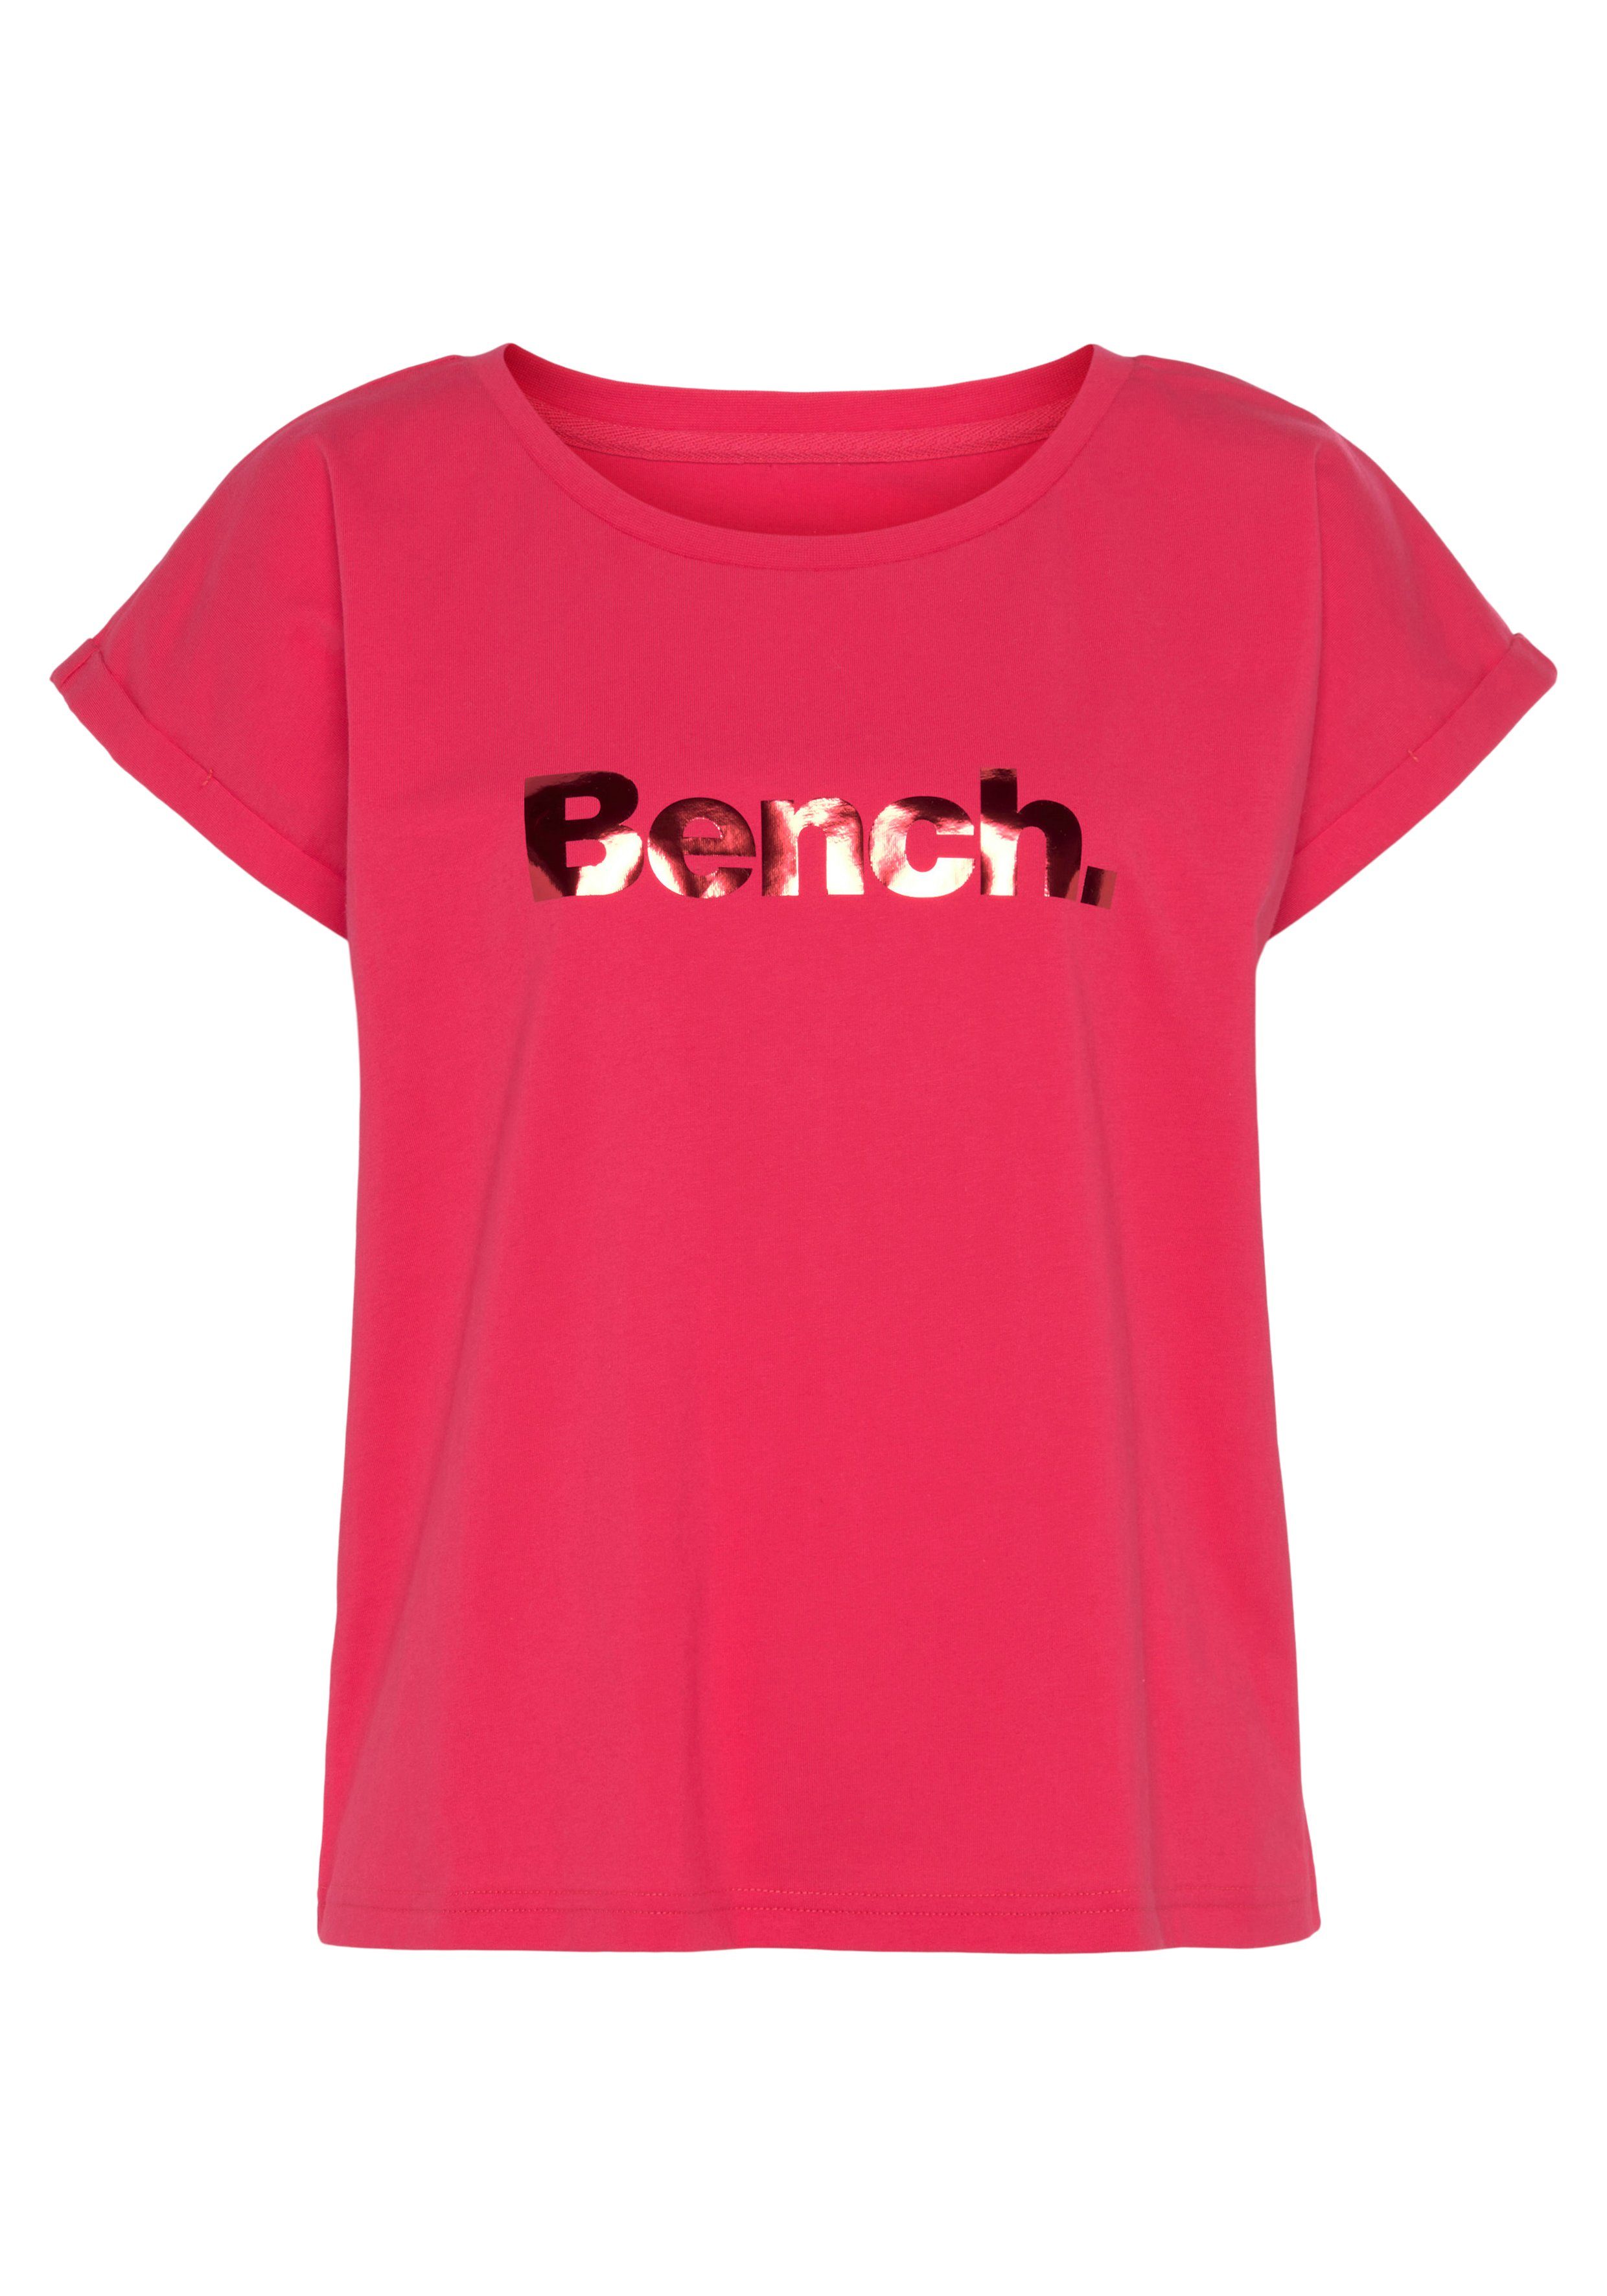 Loungeshirt pink mit Bench. Logodruck, glänzendem Loungewear T-Shirt -Kurzarmshirt, Loungewear